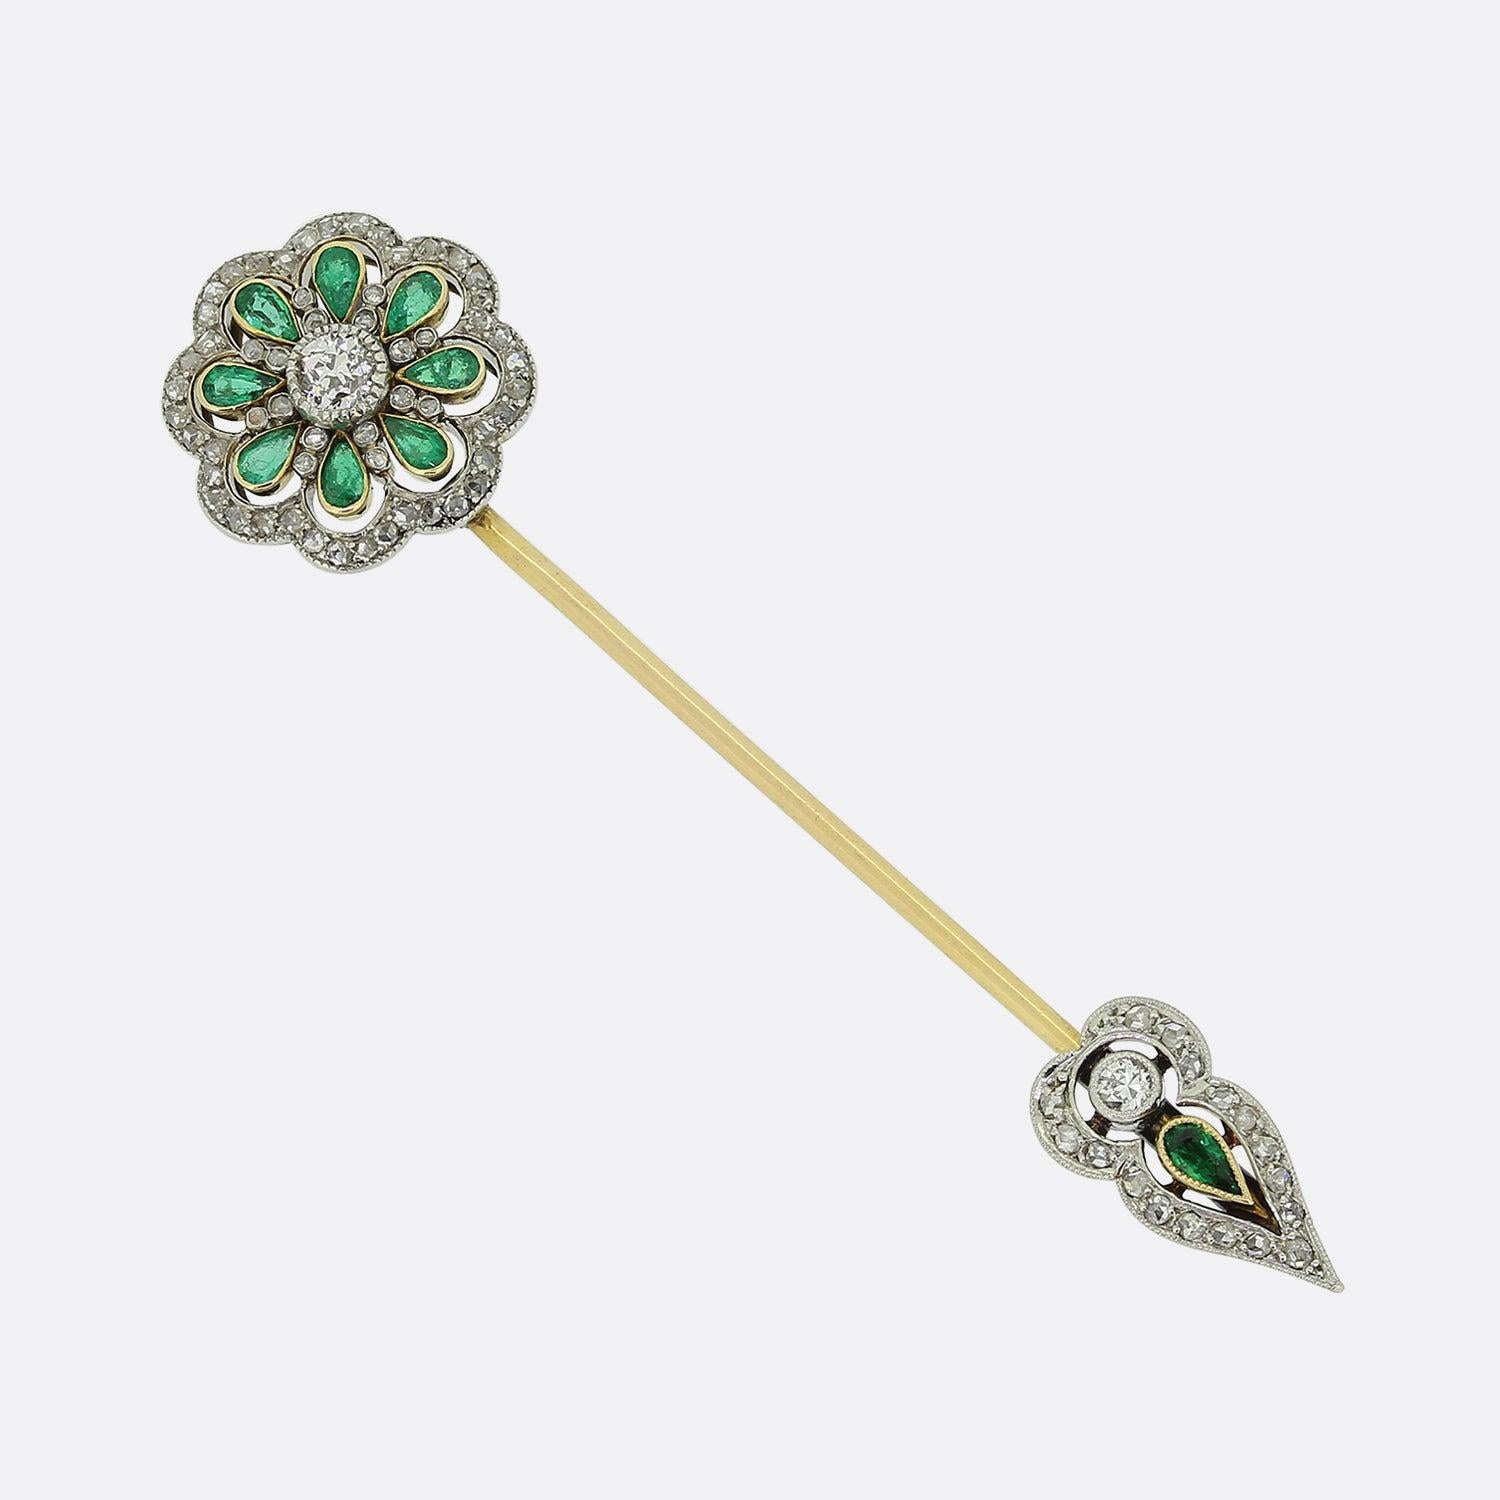 Hier haben wir eine antike Smaragd und Diamant Jabot Pin. Dieses Stück wurde zu Beginn des 20. Jahrhunderts aus 18 Karat Gelbgold gefertigt. Der Kopf zeigt einen einzelnen altgeschliffenen Diamanten in der Mitte, der von einer Gruppe birnenförmiger